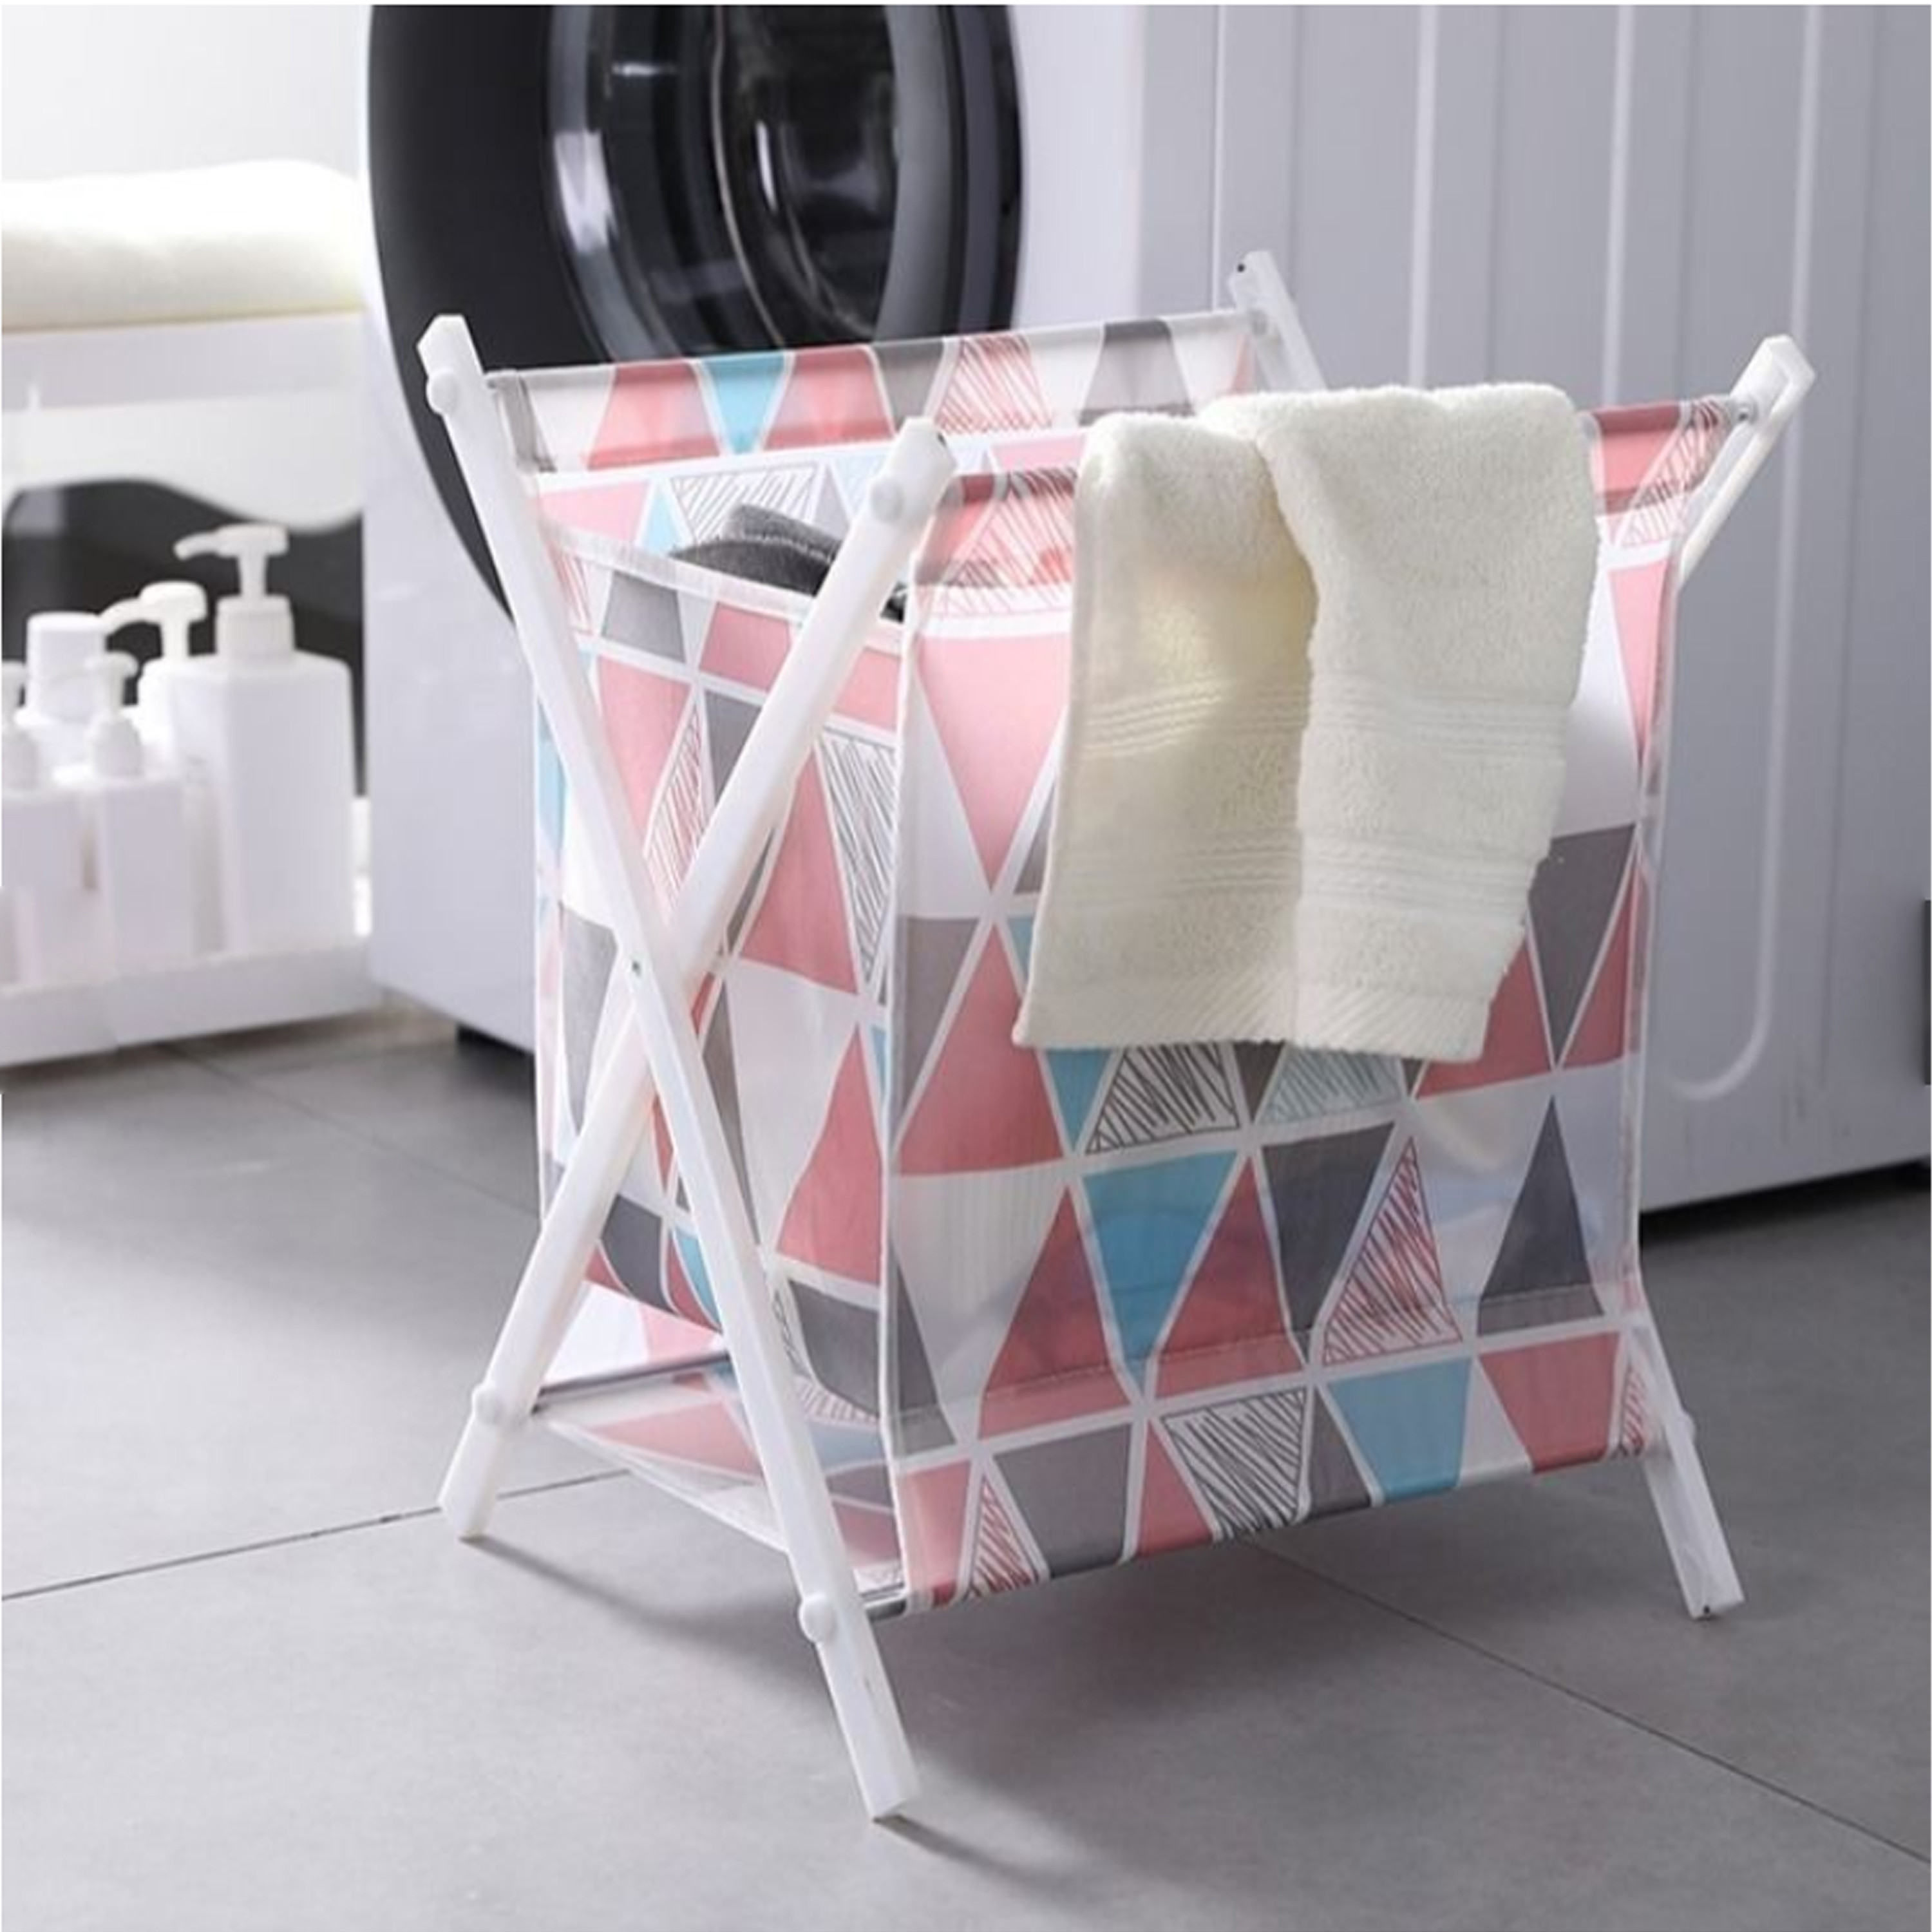 Foldable Clothing Laundry Basket